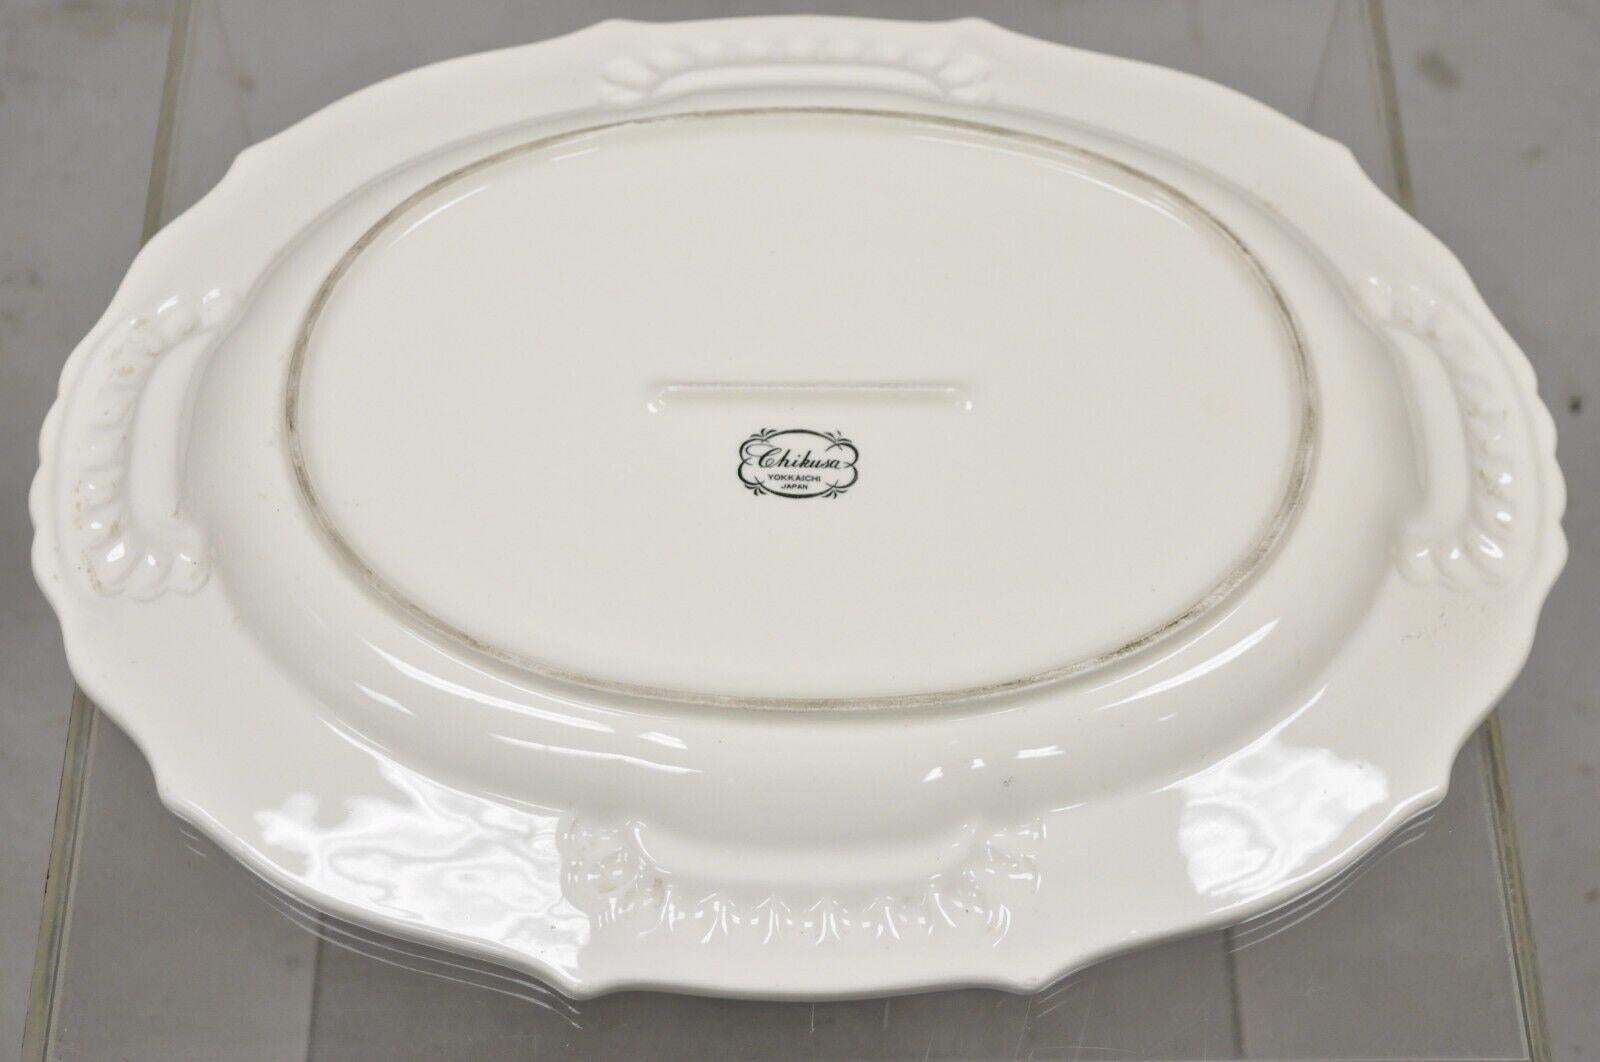 Chikusa Yokkaichi Japan Blue White Ceramic Chinese Bird Platter Dish Plate 2